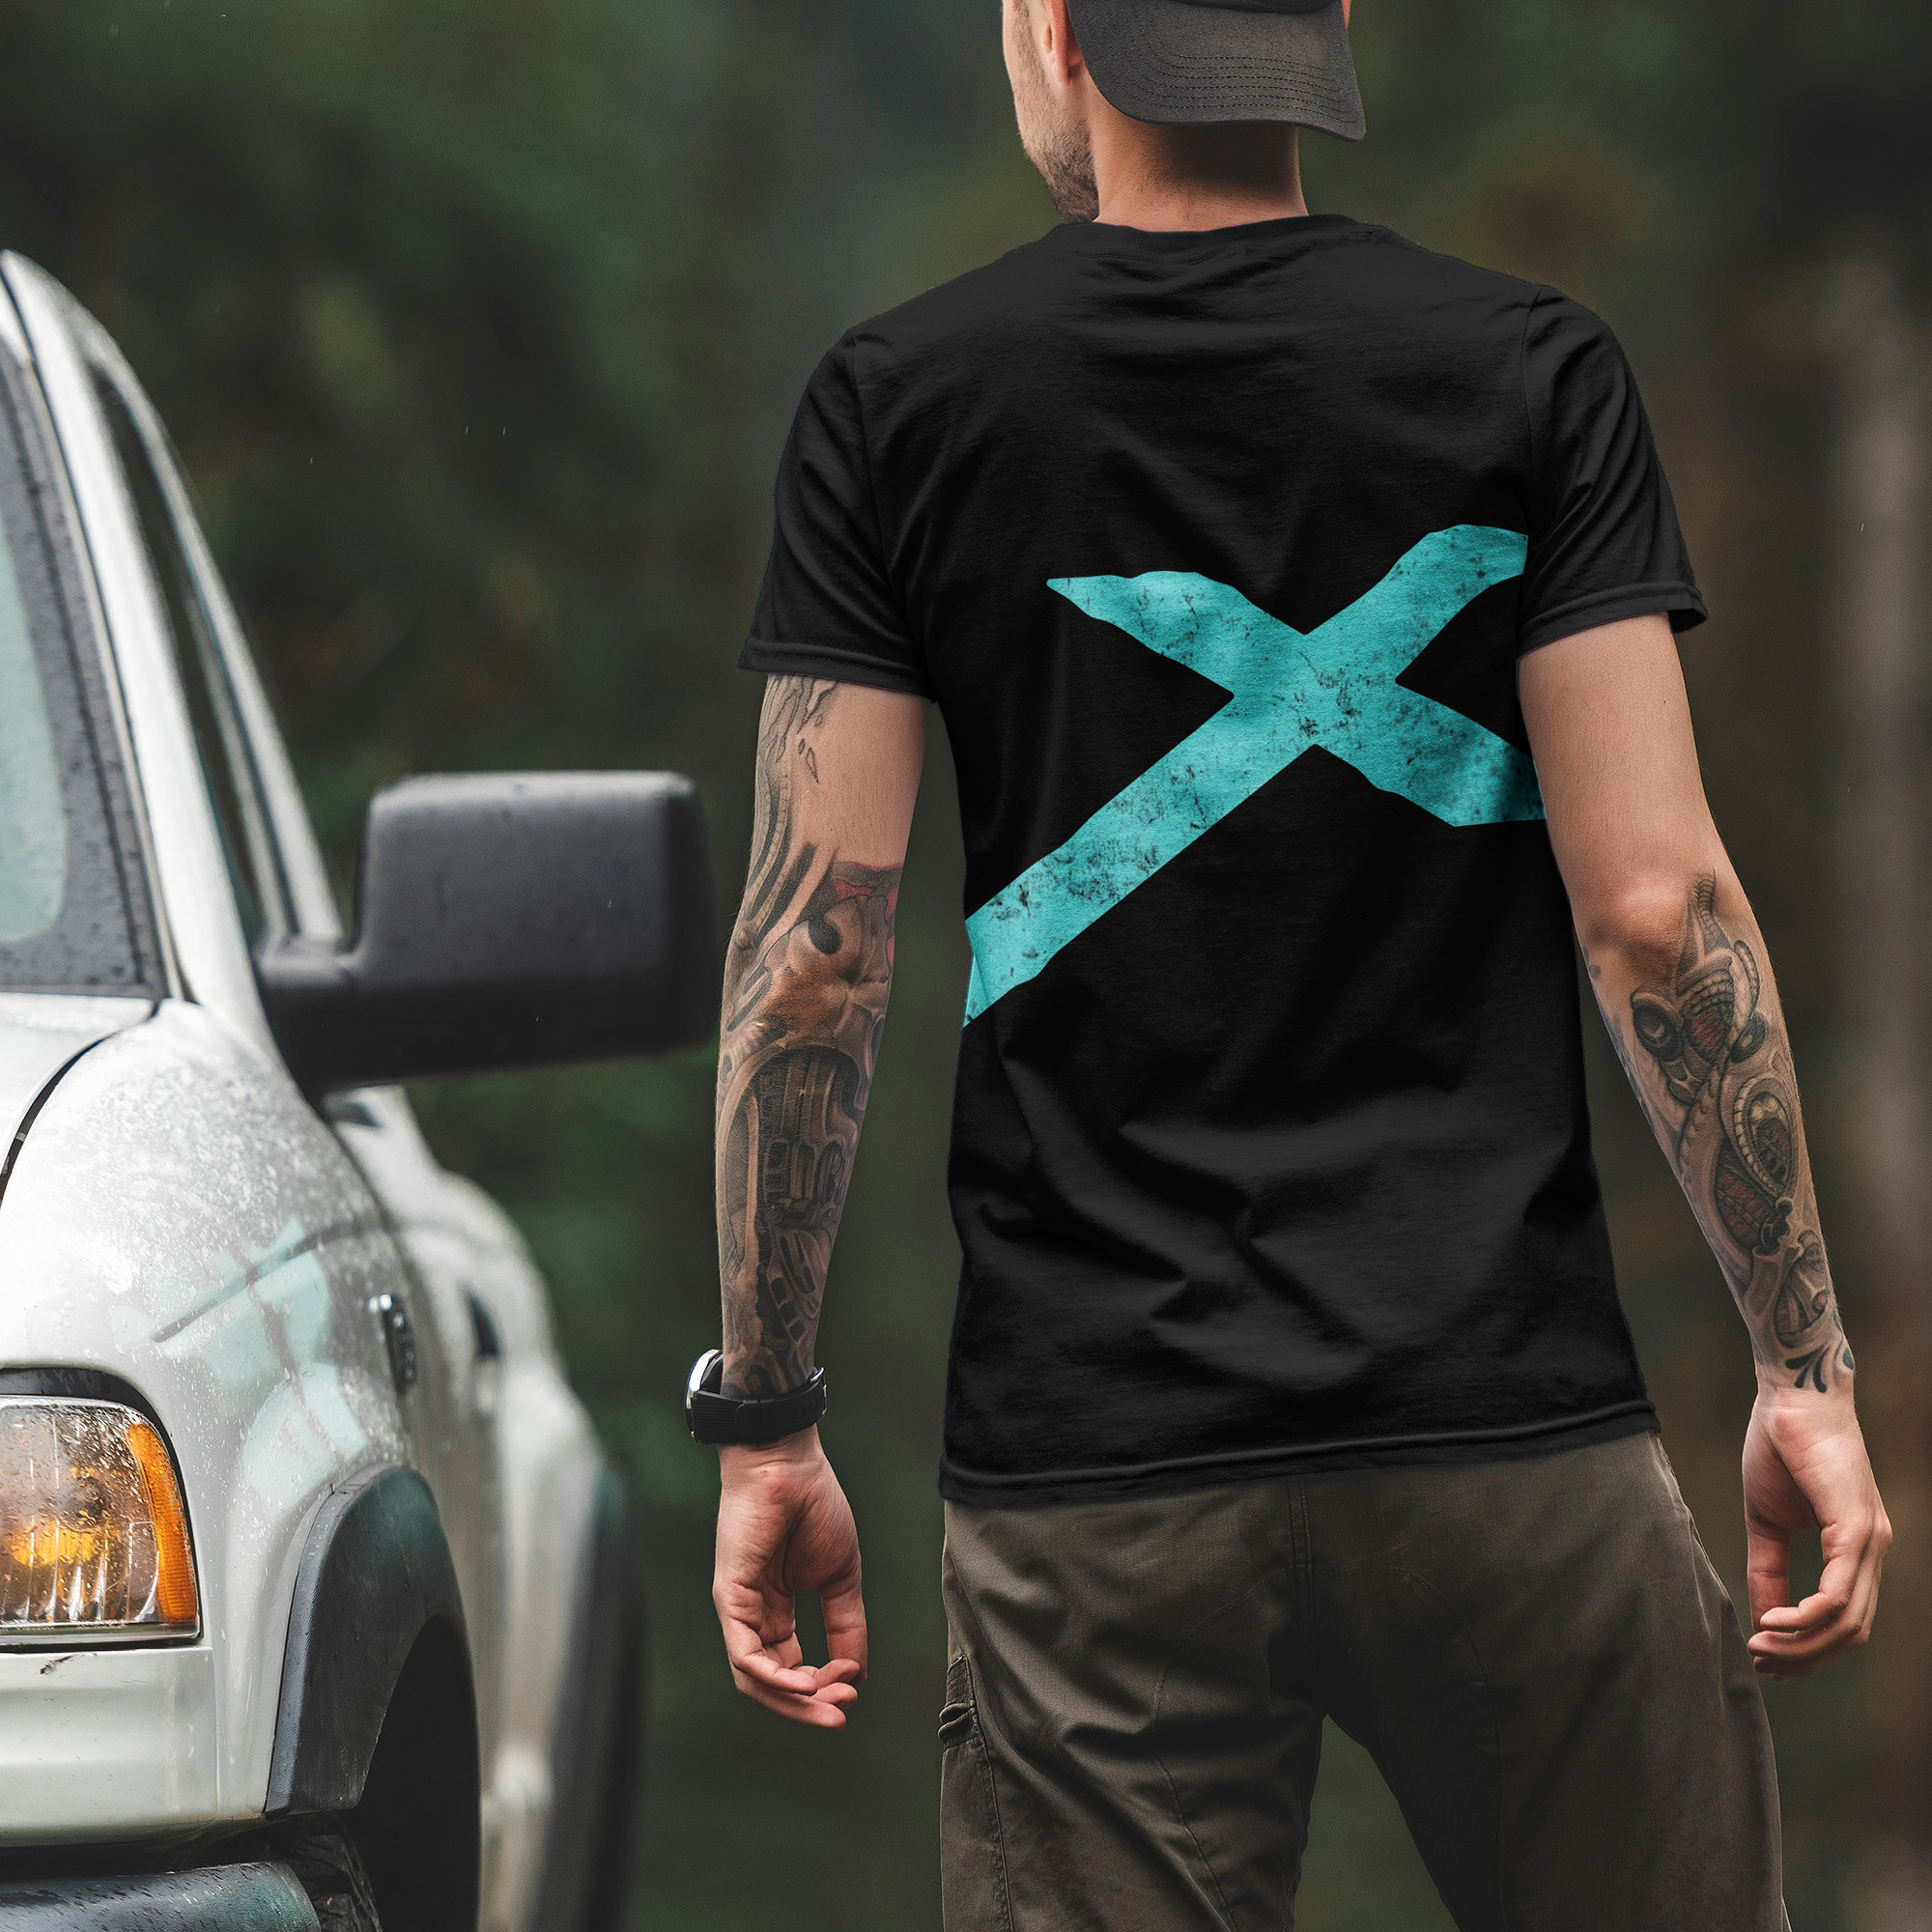 Man wearing Black T-Shirt with Apex Interstellar Transport logo in teal blue back